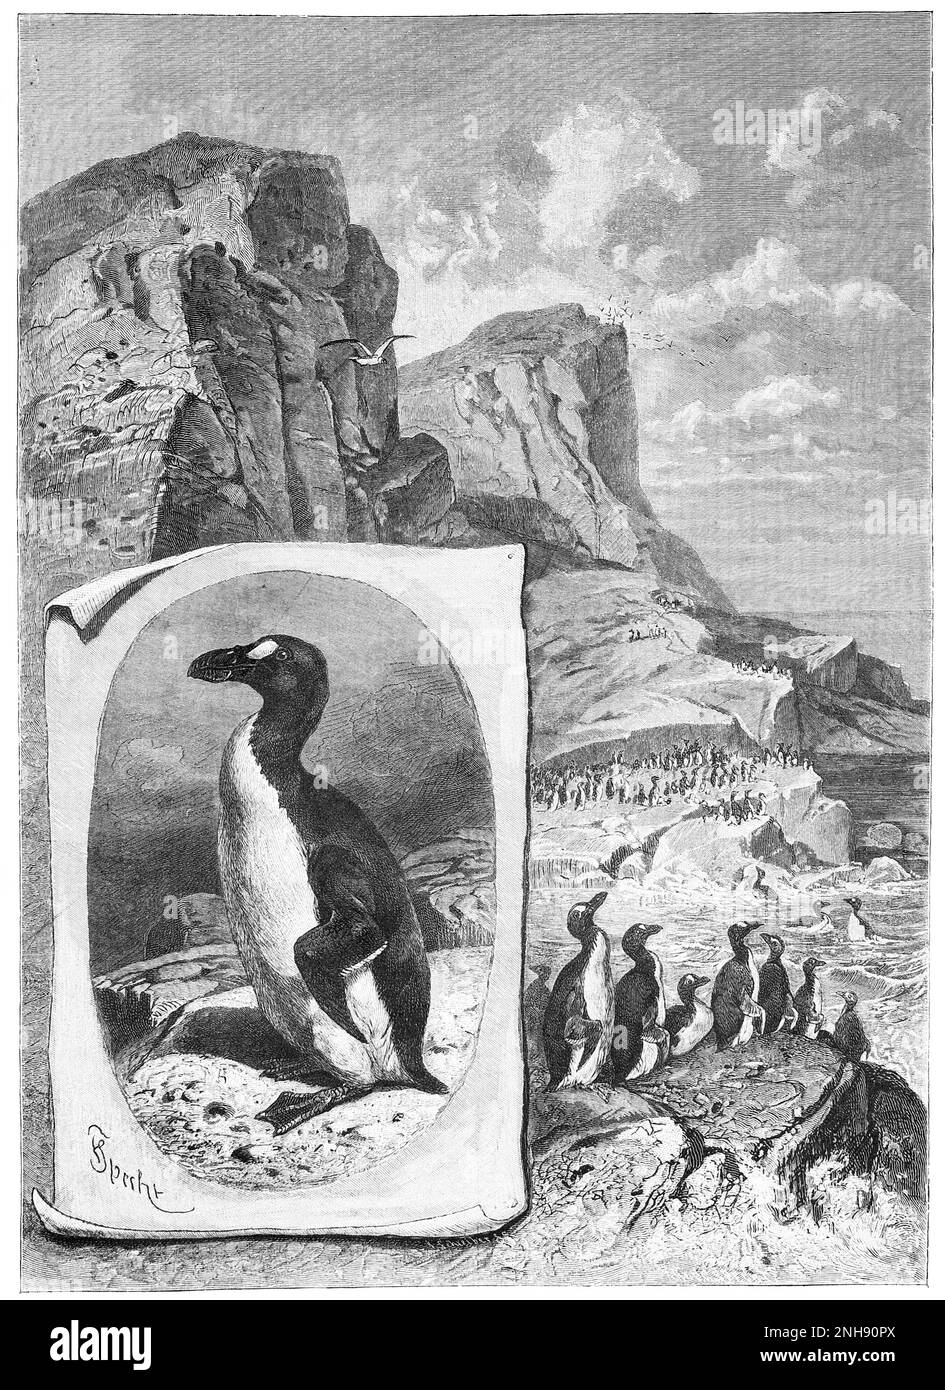 Il grande auk (Pinguinus impennis) è una specie di alcide senza luce che si estinse a metà del 19th° secolo. Era l'unica specie moderna del genere Pinguinus. Non è strettamente legata agli uccelli oggi noti come pinguini, che sono stati scoperti più tardi dagli europei e così chiamato dai marinai a causa della loro somiglianza fisica al grande auk. Illustrazione da Ernst Keil's Nachfolger, 1884. Foto Stock